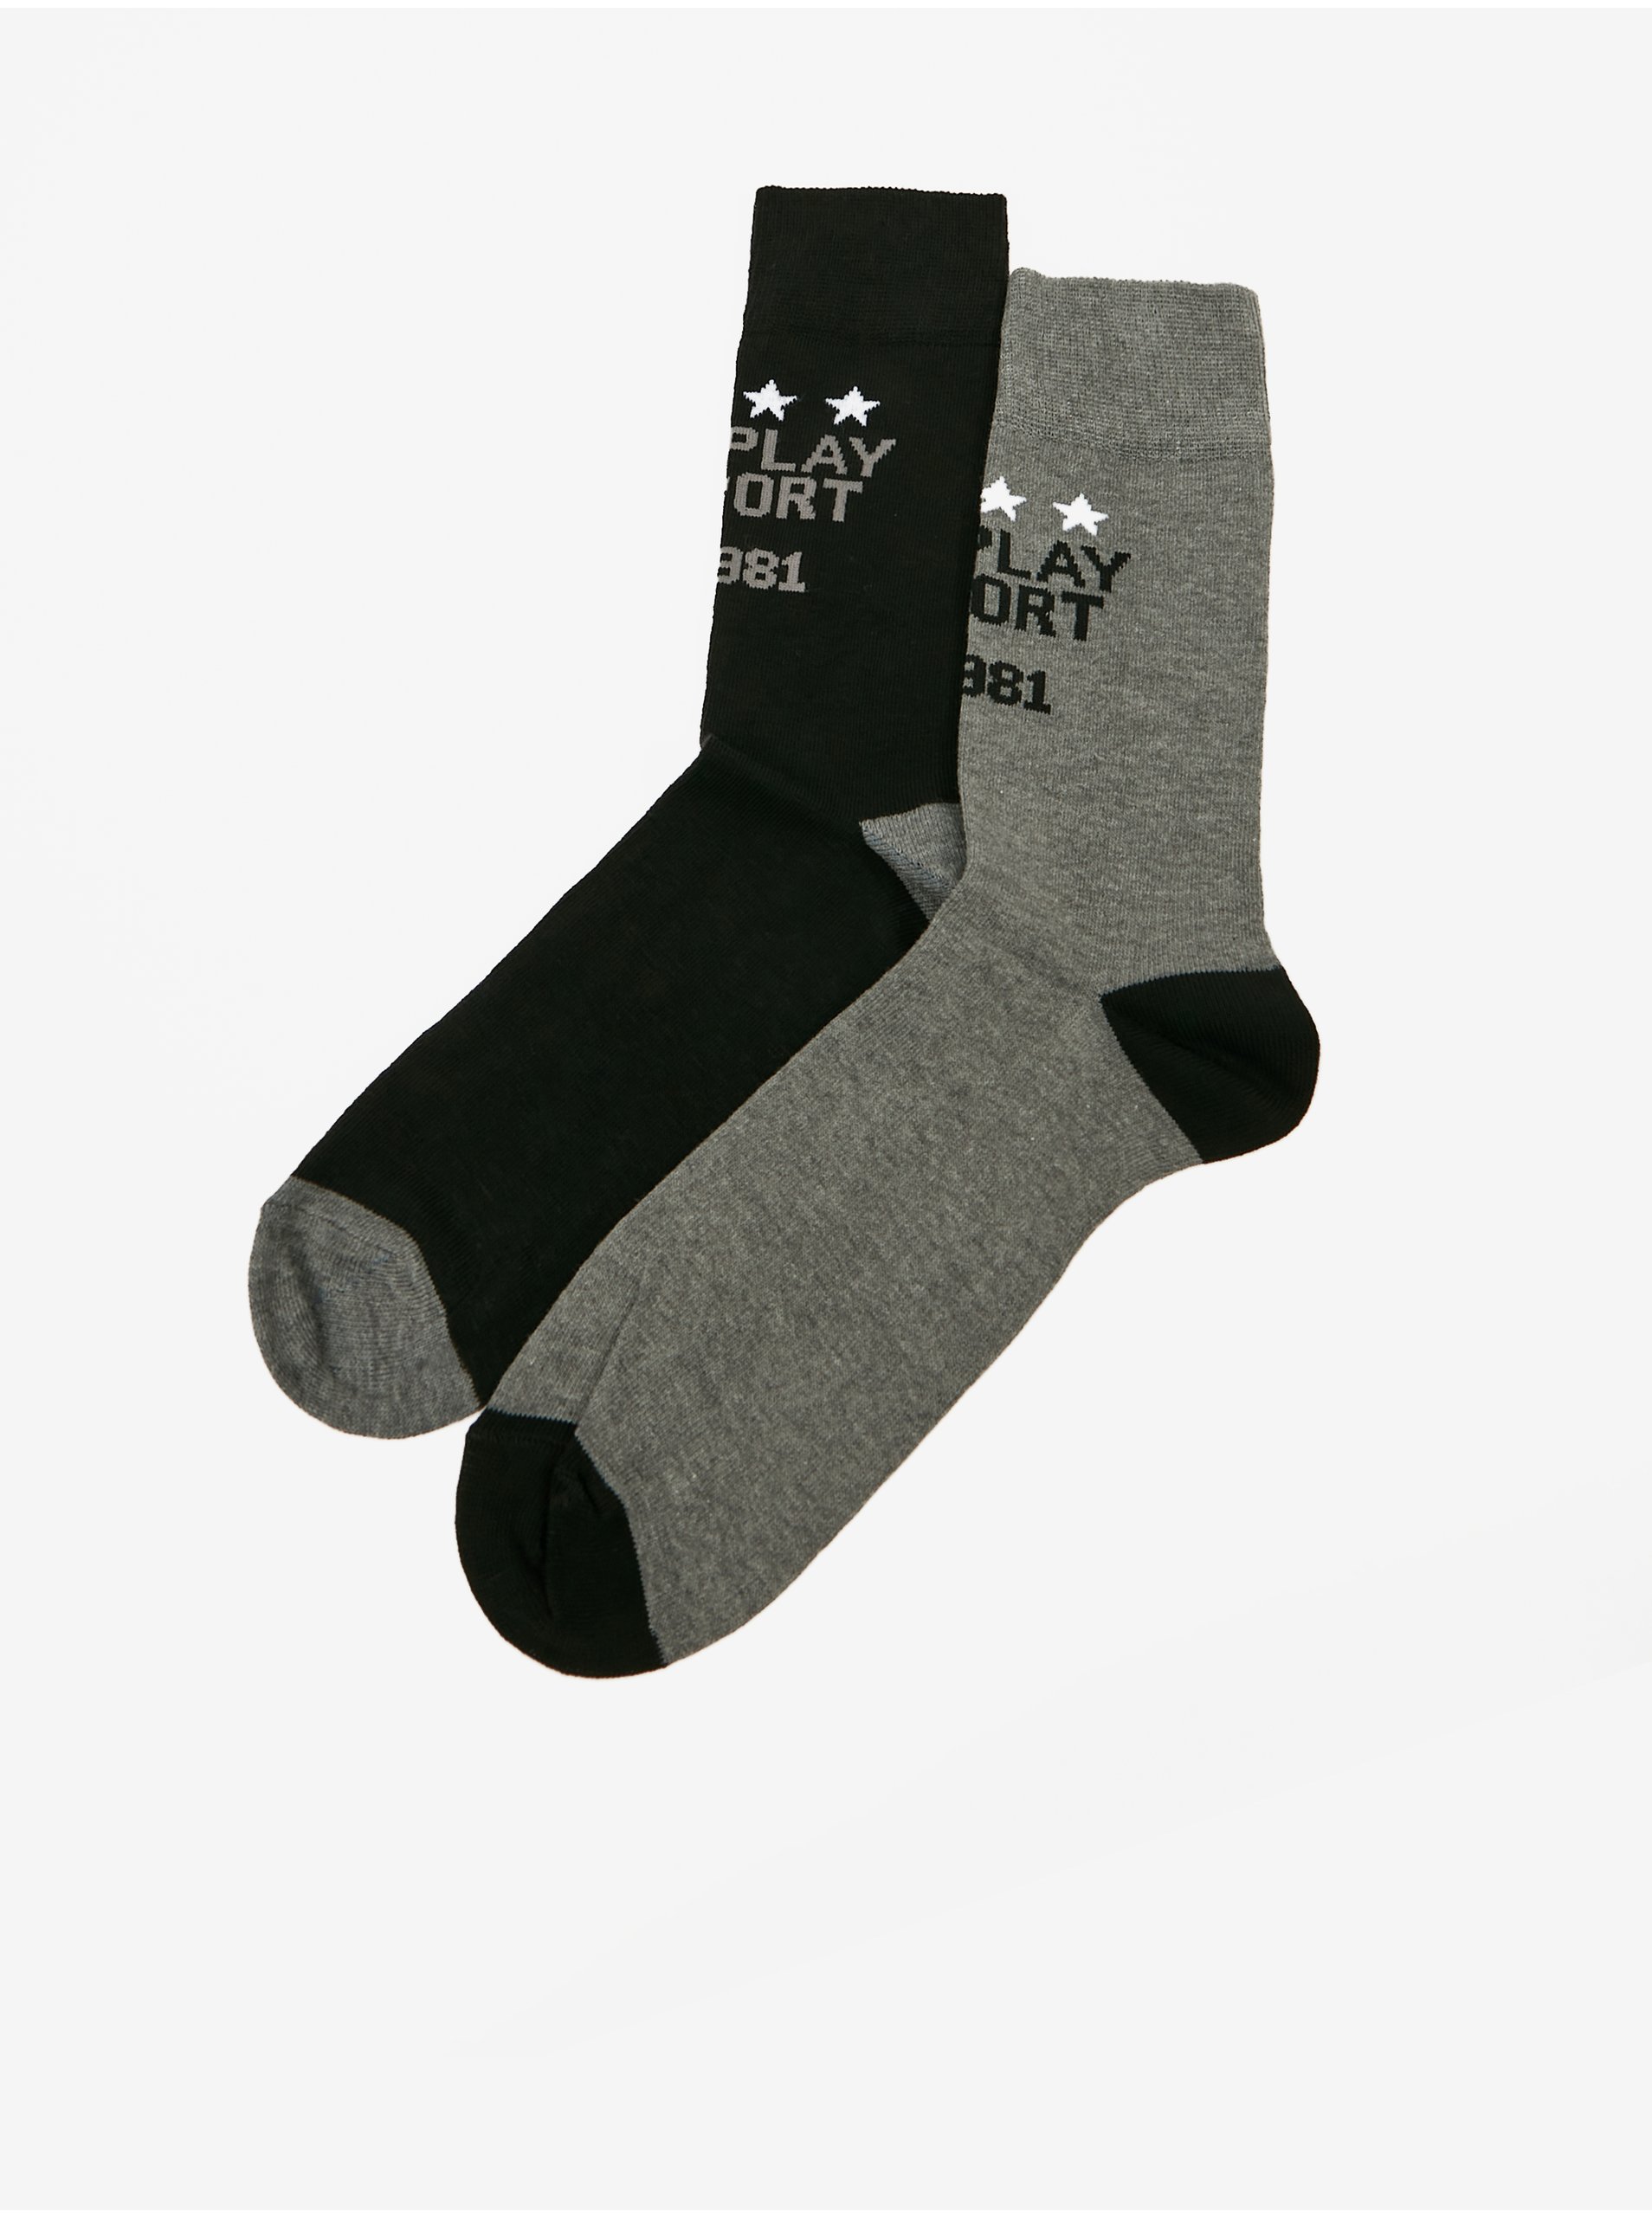 Lacno Súprava dvoch párov pánskych ponožiek v šedej a čiernej farbe Replay